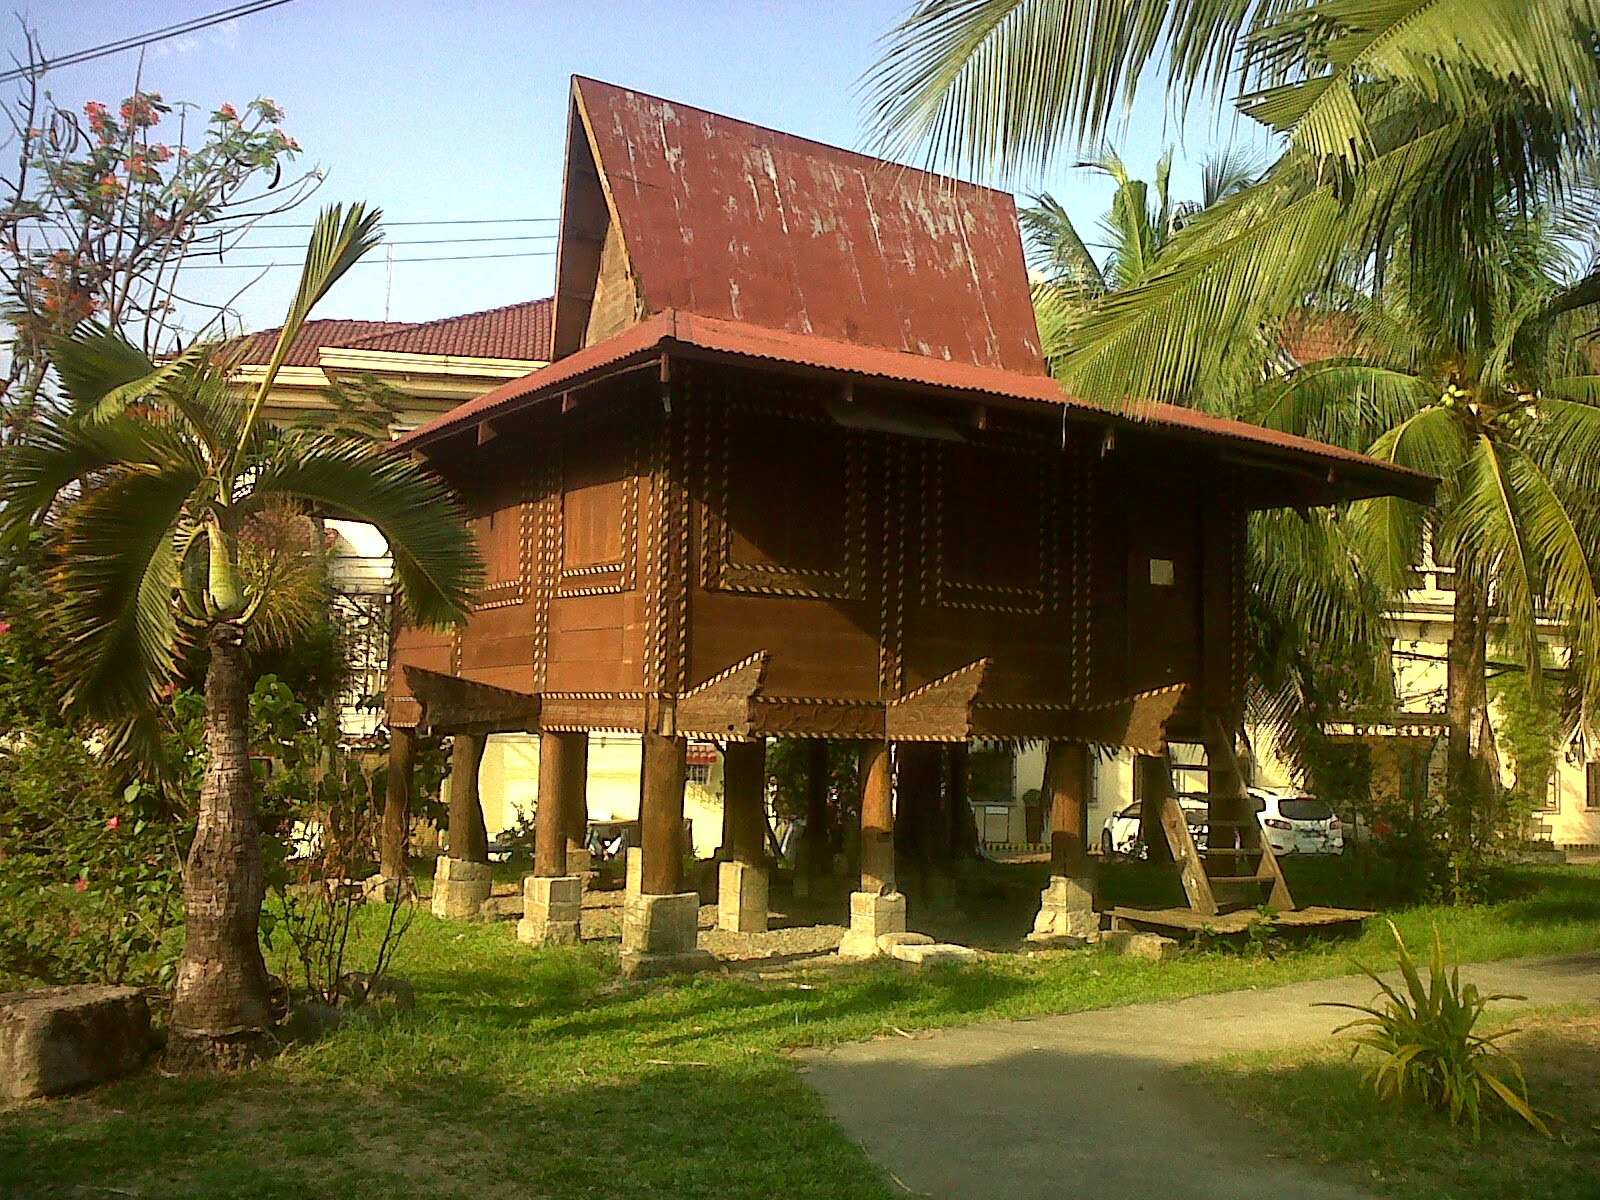 Rumah adat yang terkenal di filipina adalah